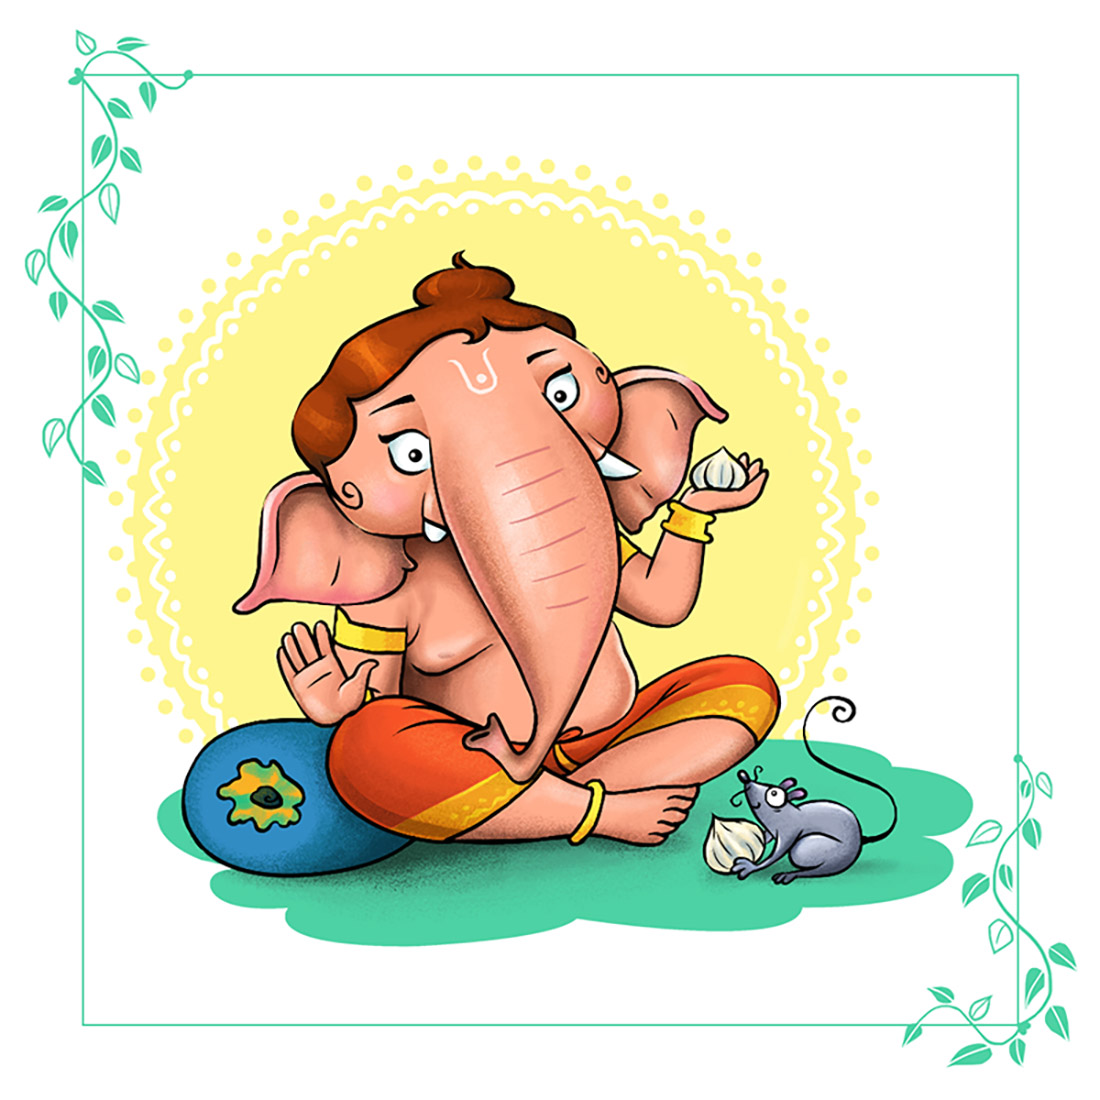 Ganesh Character JPEG PNG PSD cover image.